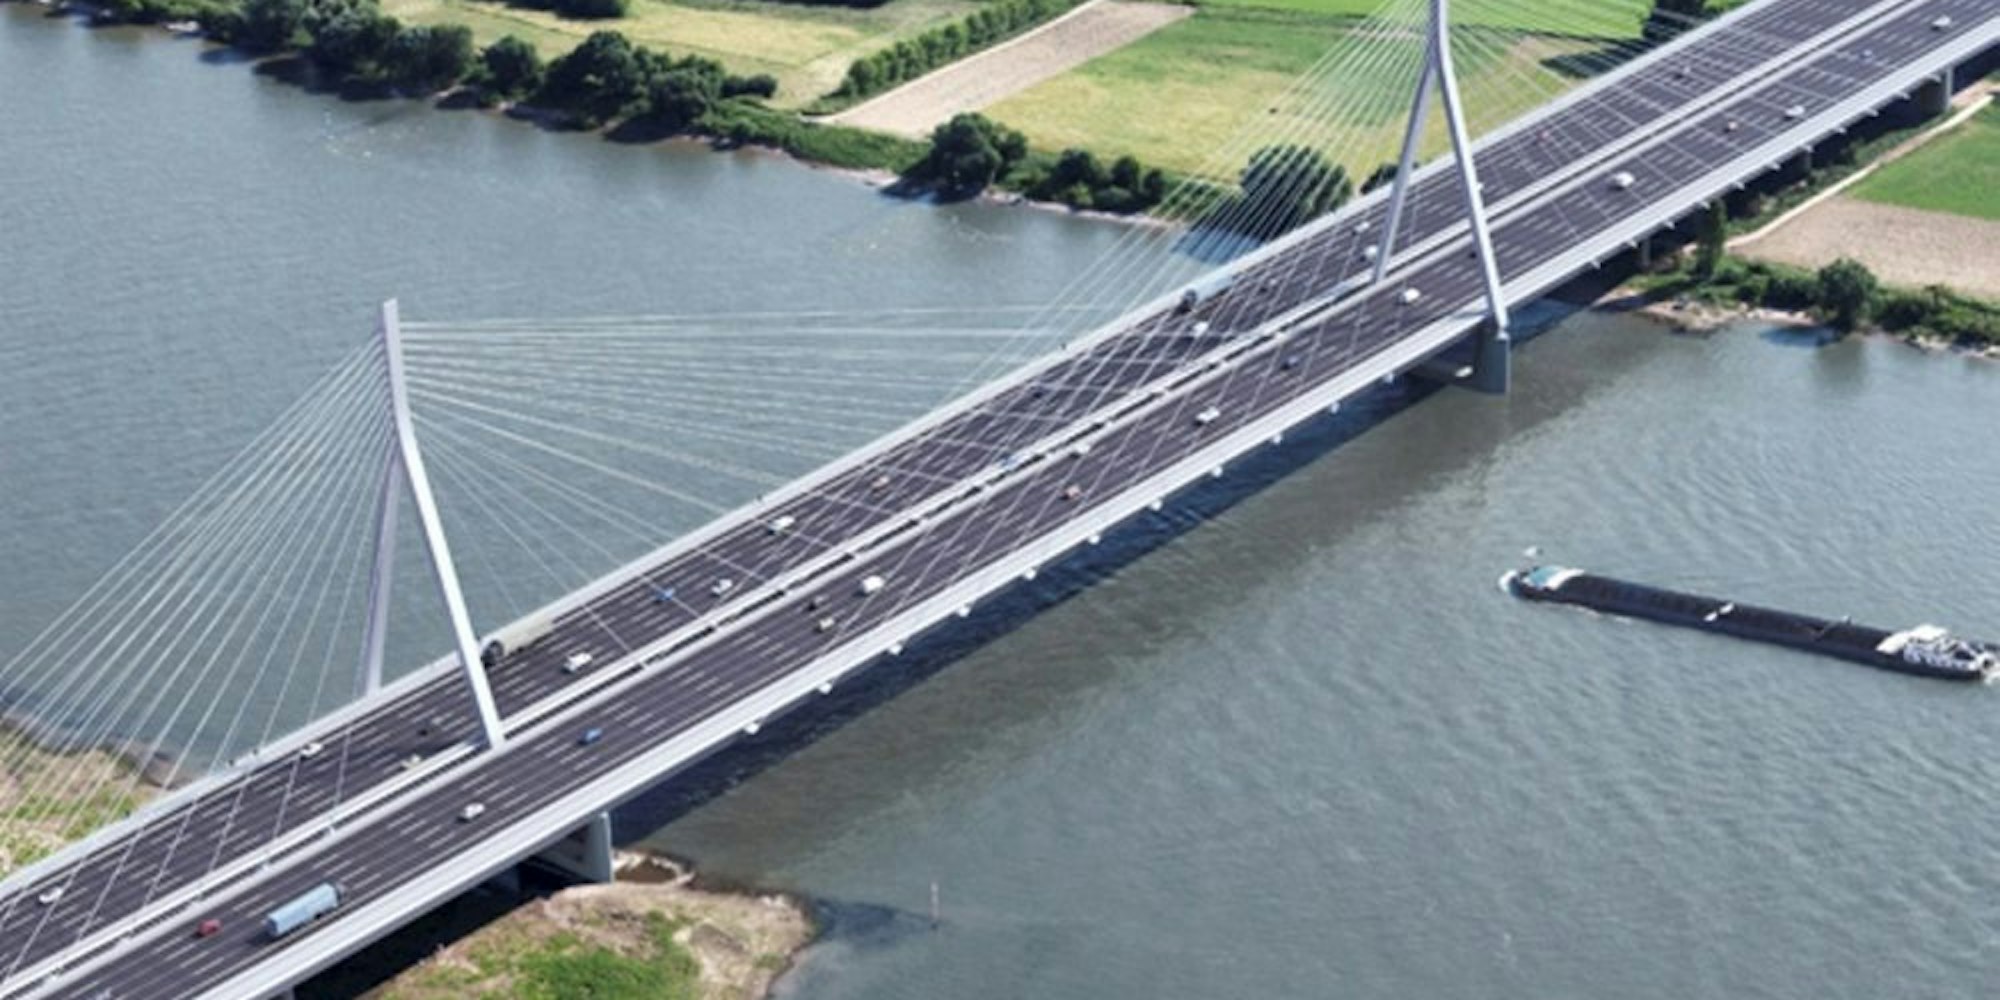 Bleibt noch länger nur eine Vision: die neue Leverkusener Rheinbrücke. Im September 2023 soll das erste Teilstück für den Verkehr freigegeben werden.